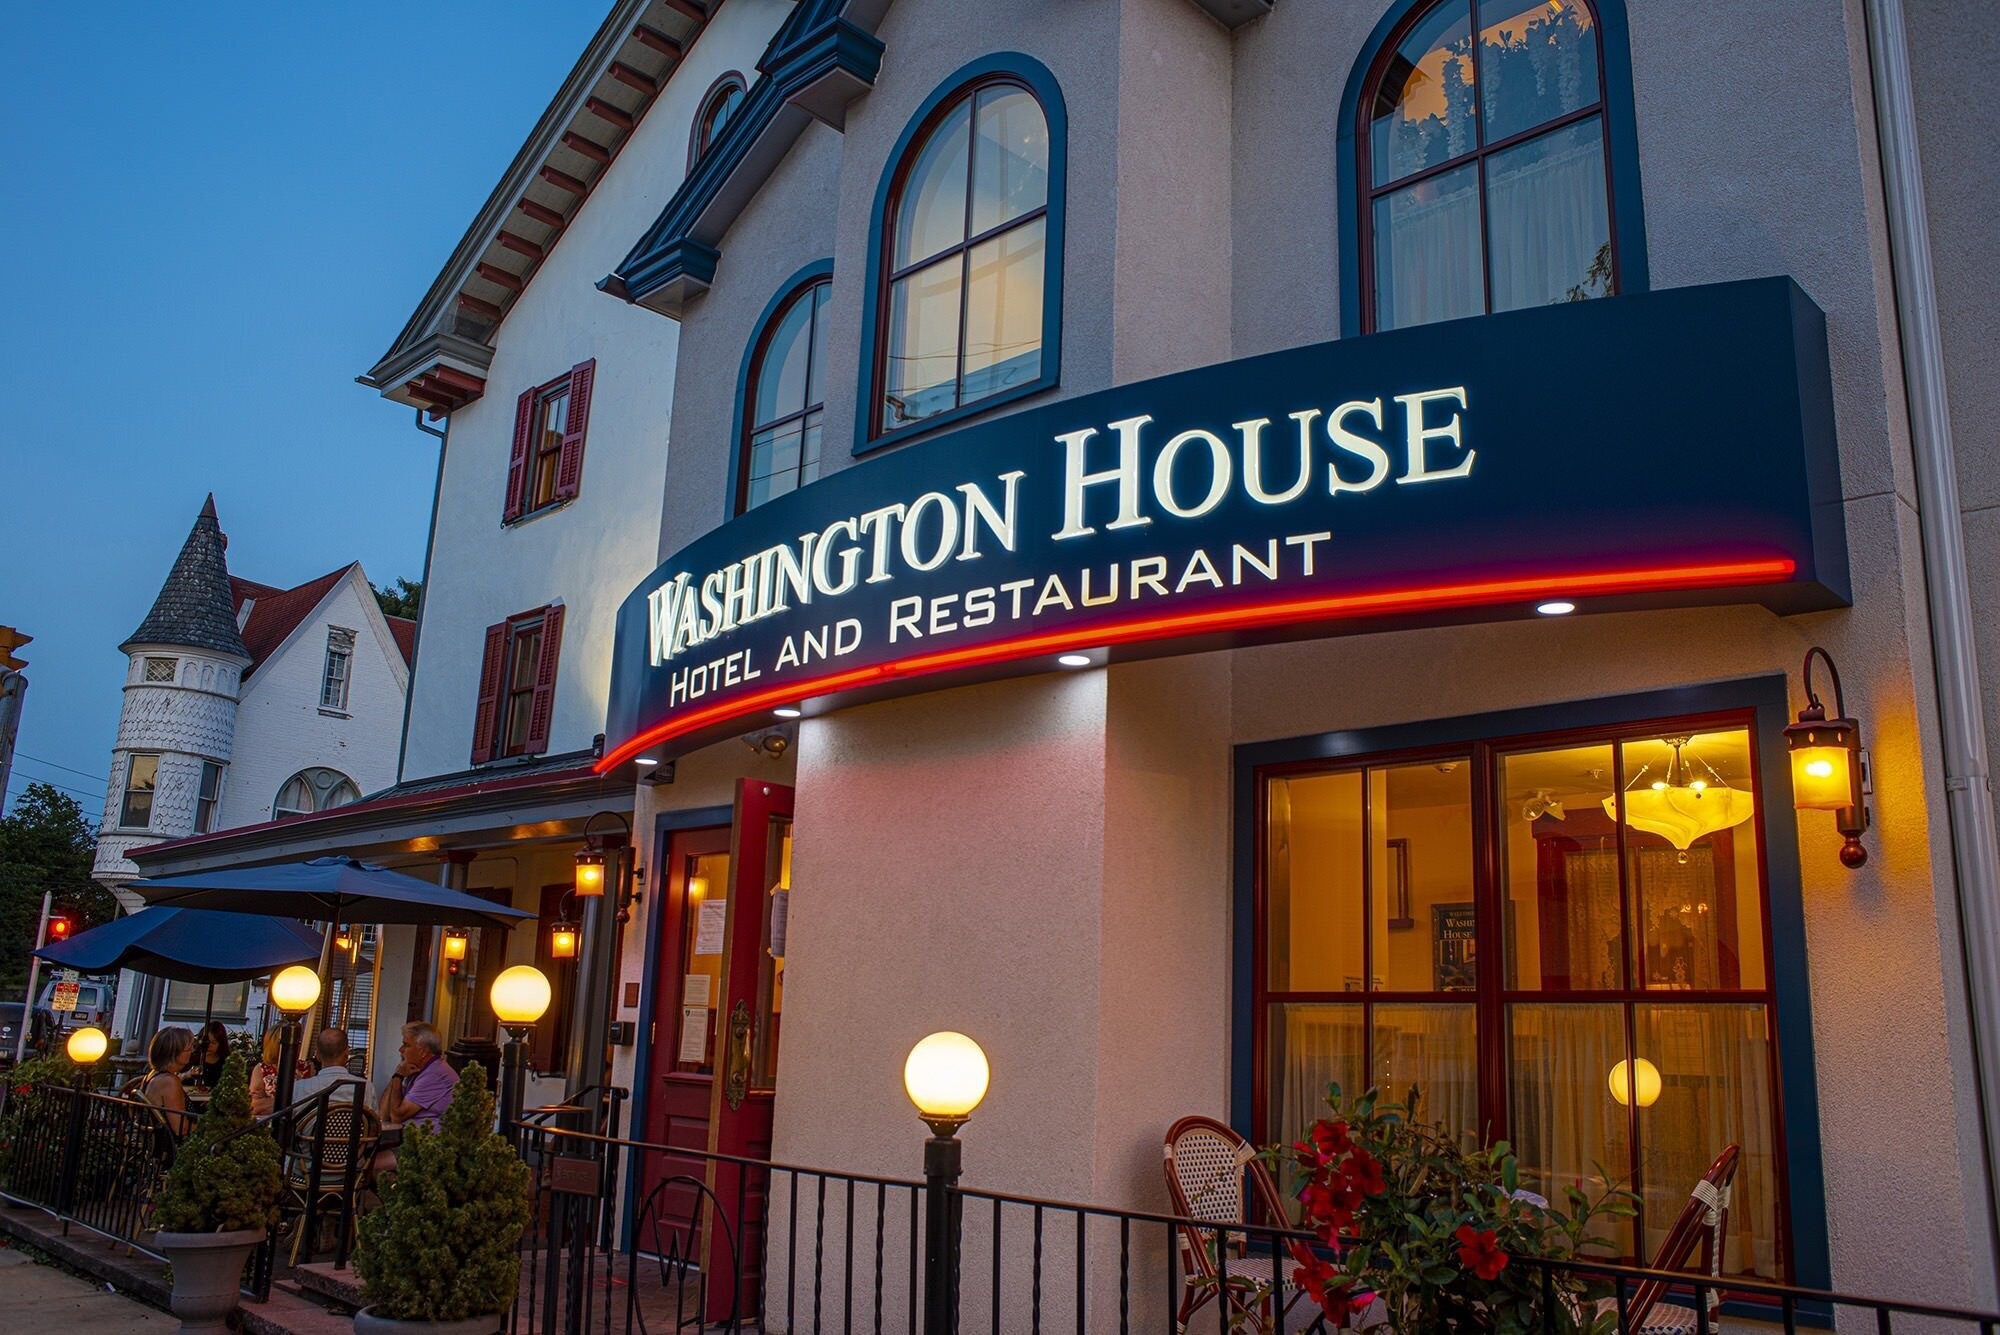 Washington House Hotel & Restaurant